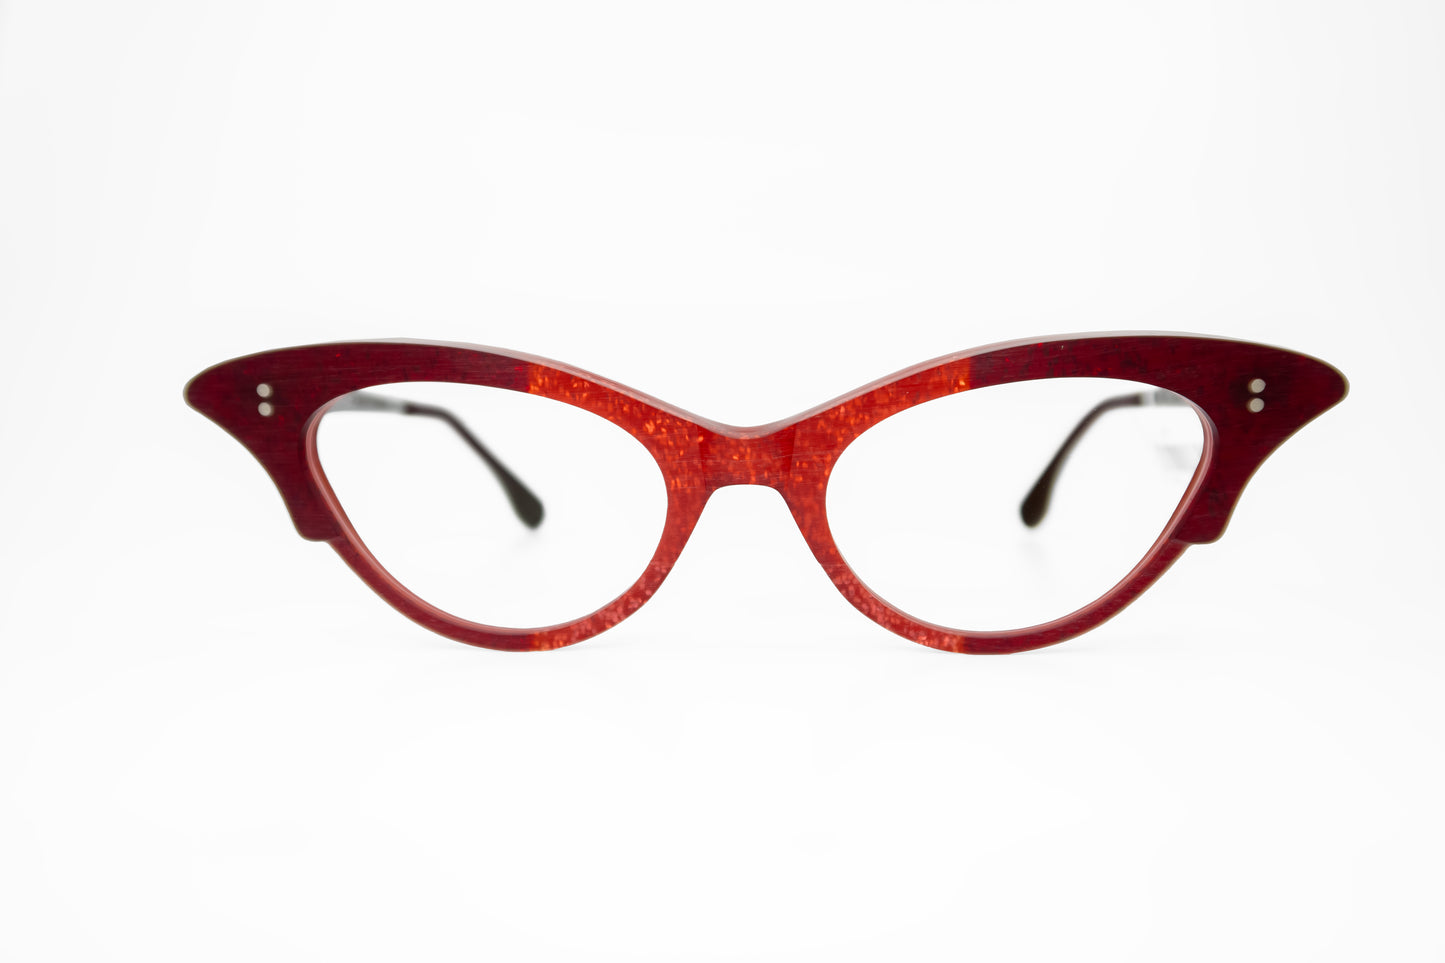 Merrill Rapp Frames Glasses